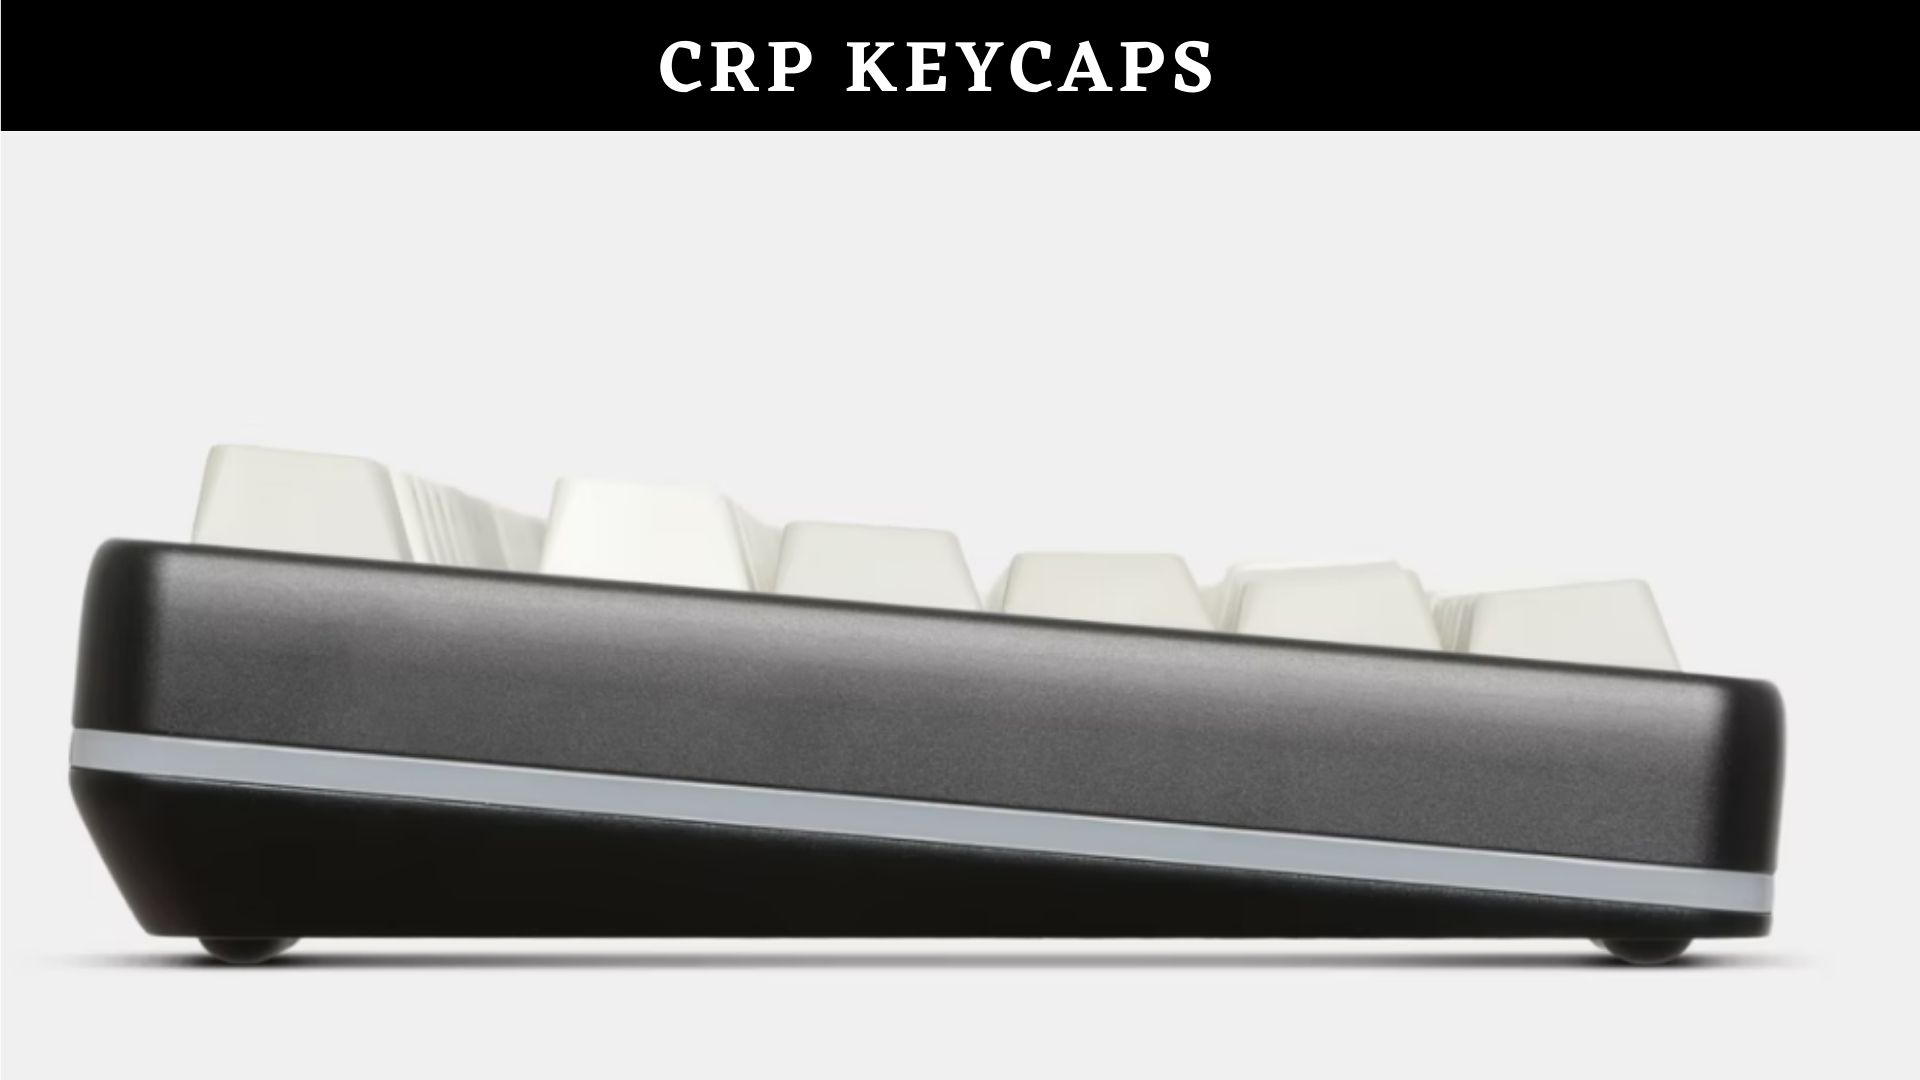 CRP keycaps